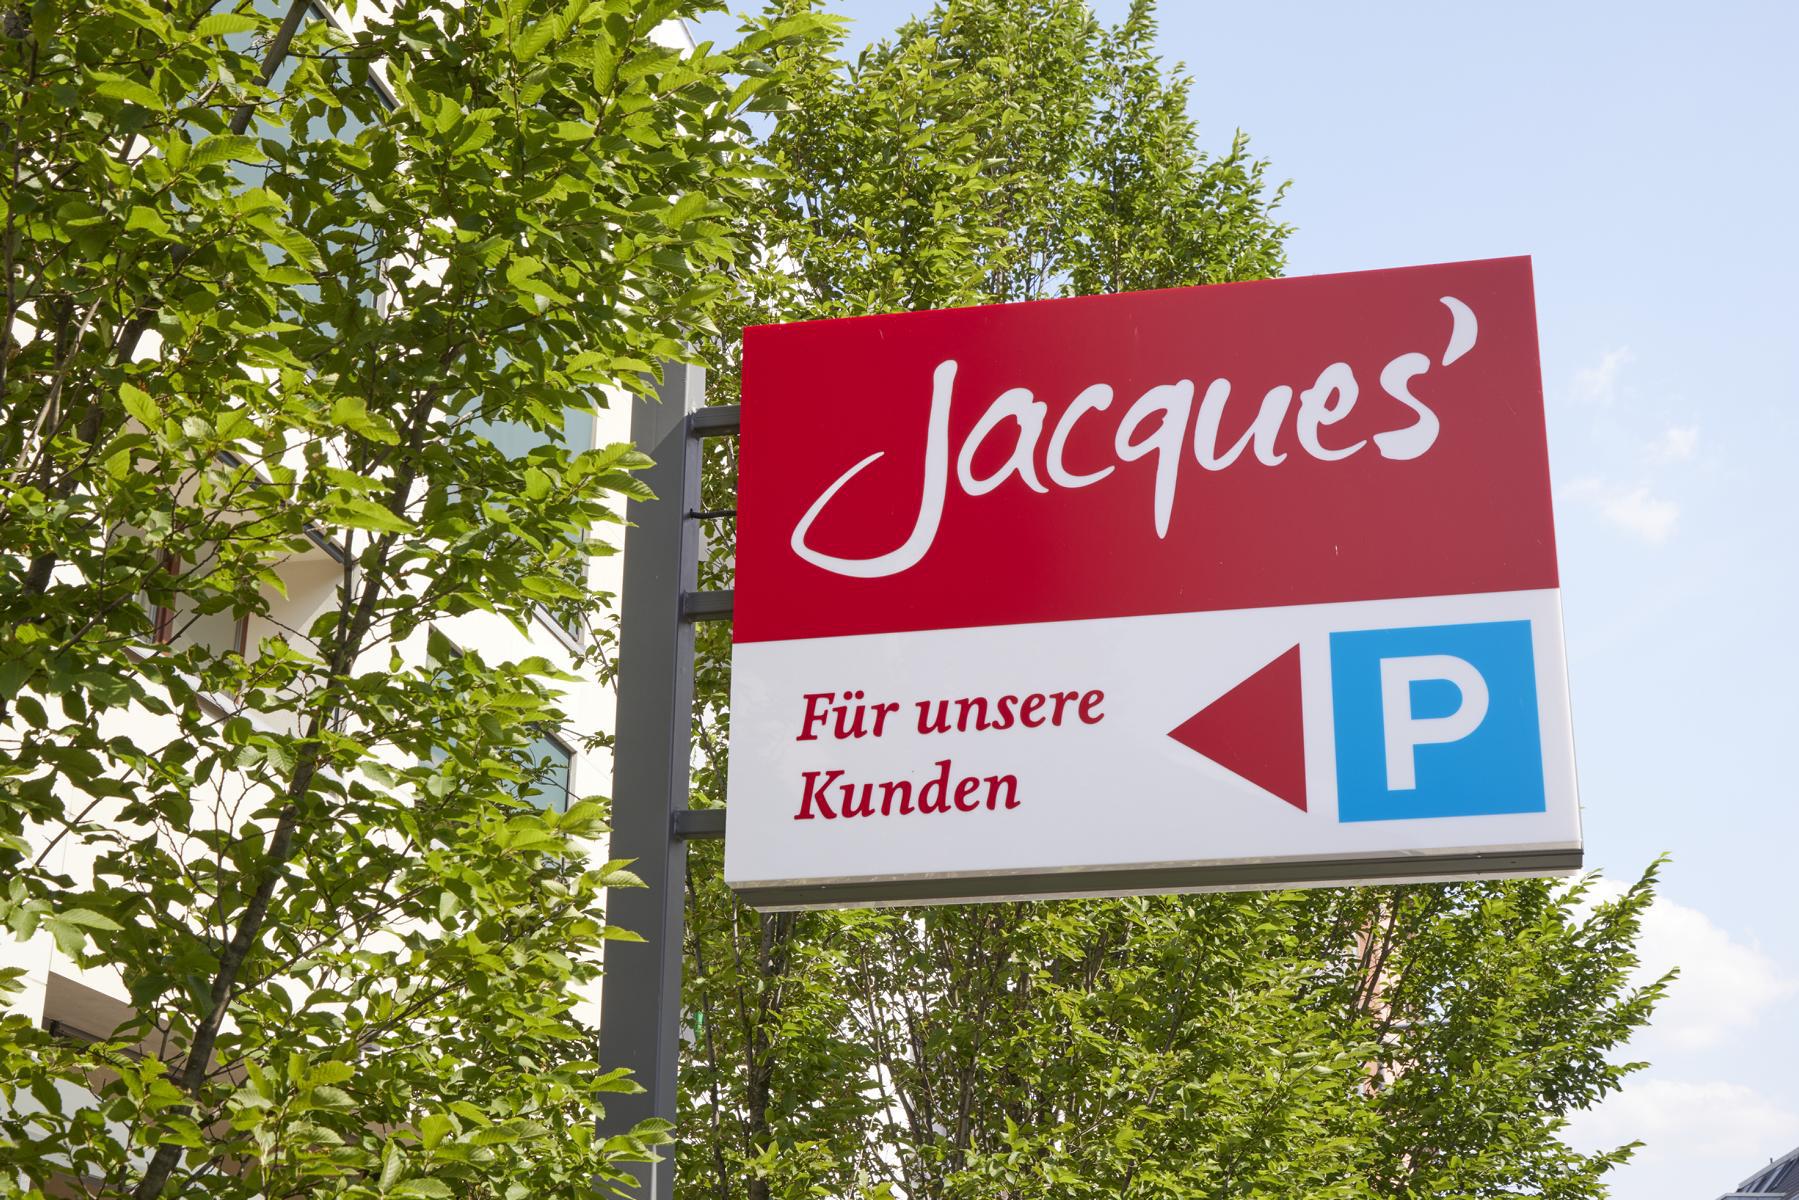 Jacques’ Wein-Depot Köln-Rodenkirchen, Ringstraße 9-11 in Köln